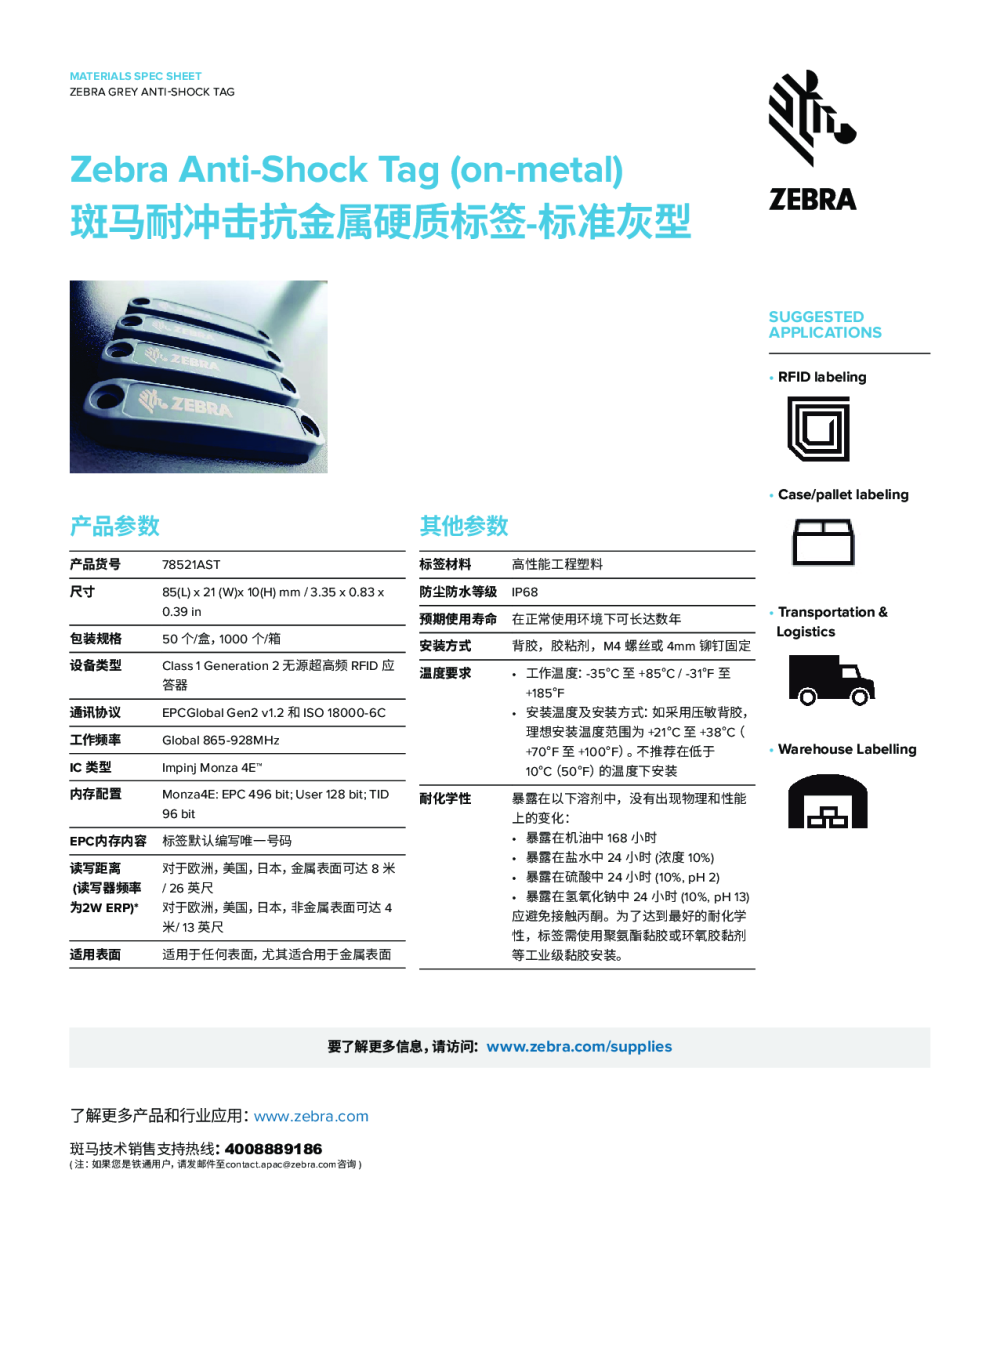 ZEBRA斑马耐冲击抗金属硬质标签-标准灰型 货架标签 叉车标签 汽车制造标签RFID硬质标签图片